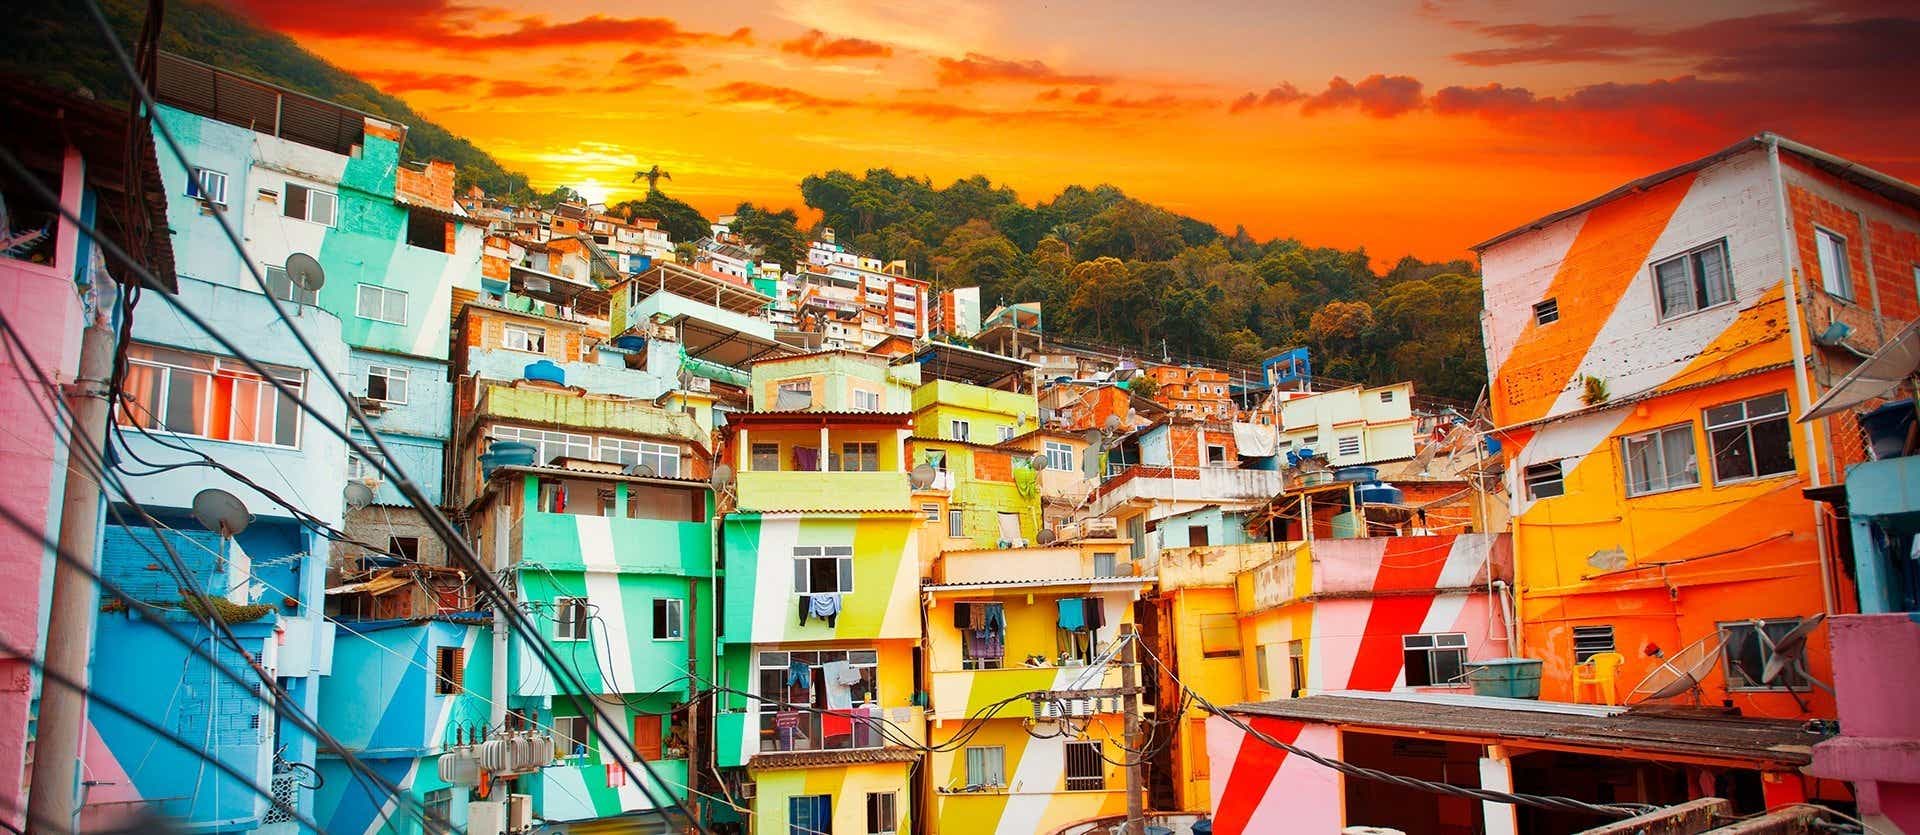 Favelas de Río de Janeiro <span class="iconos separador"></span>  Brasil